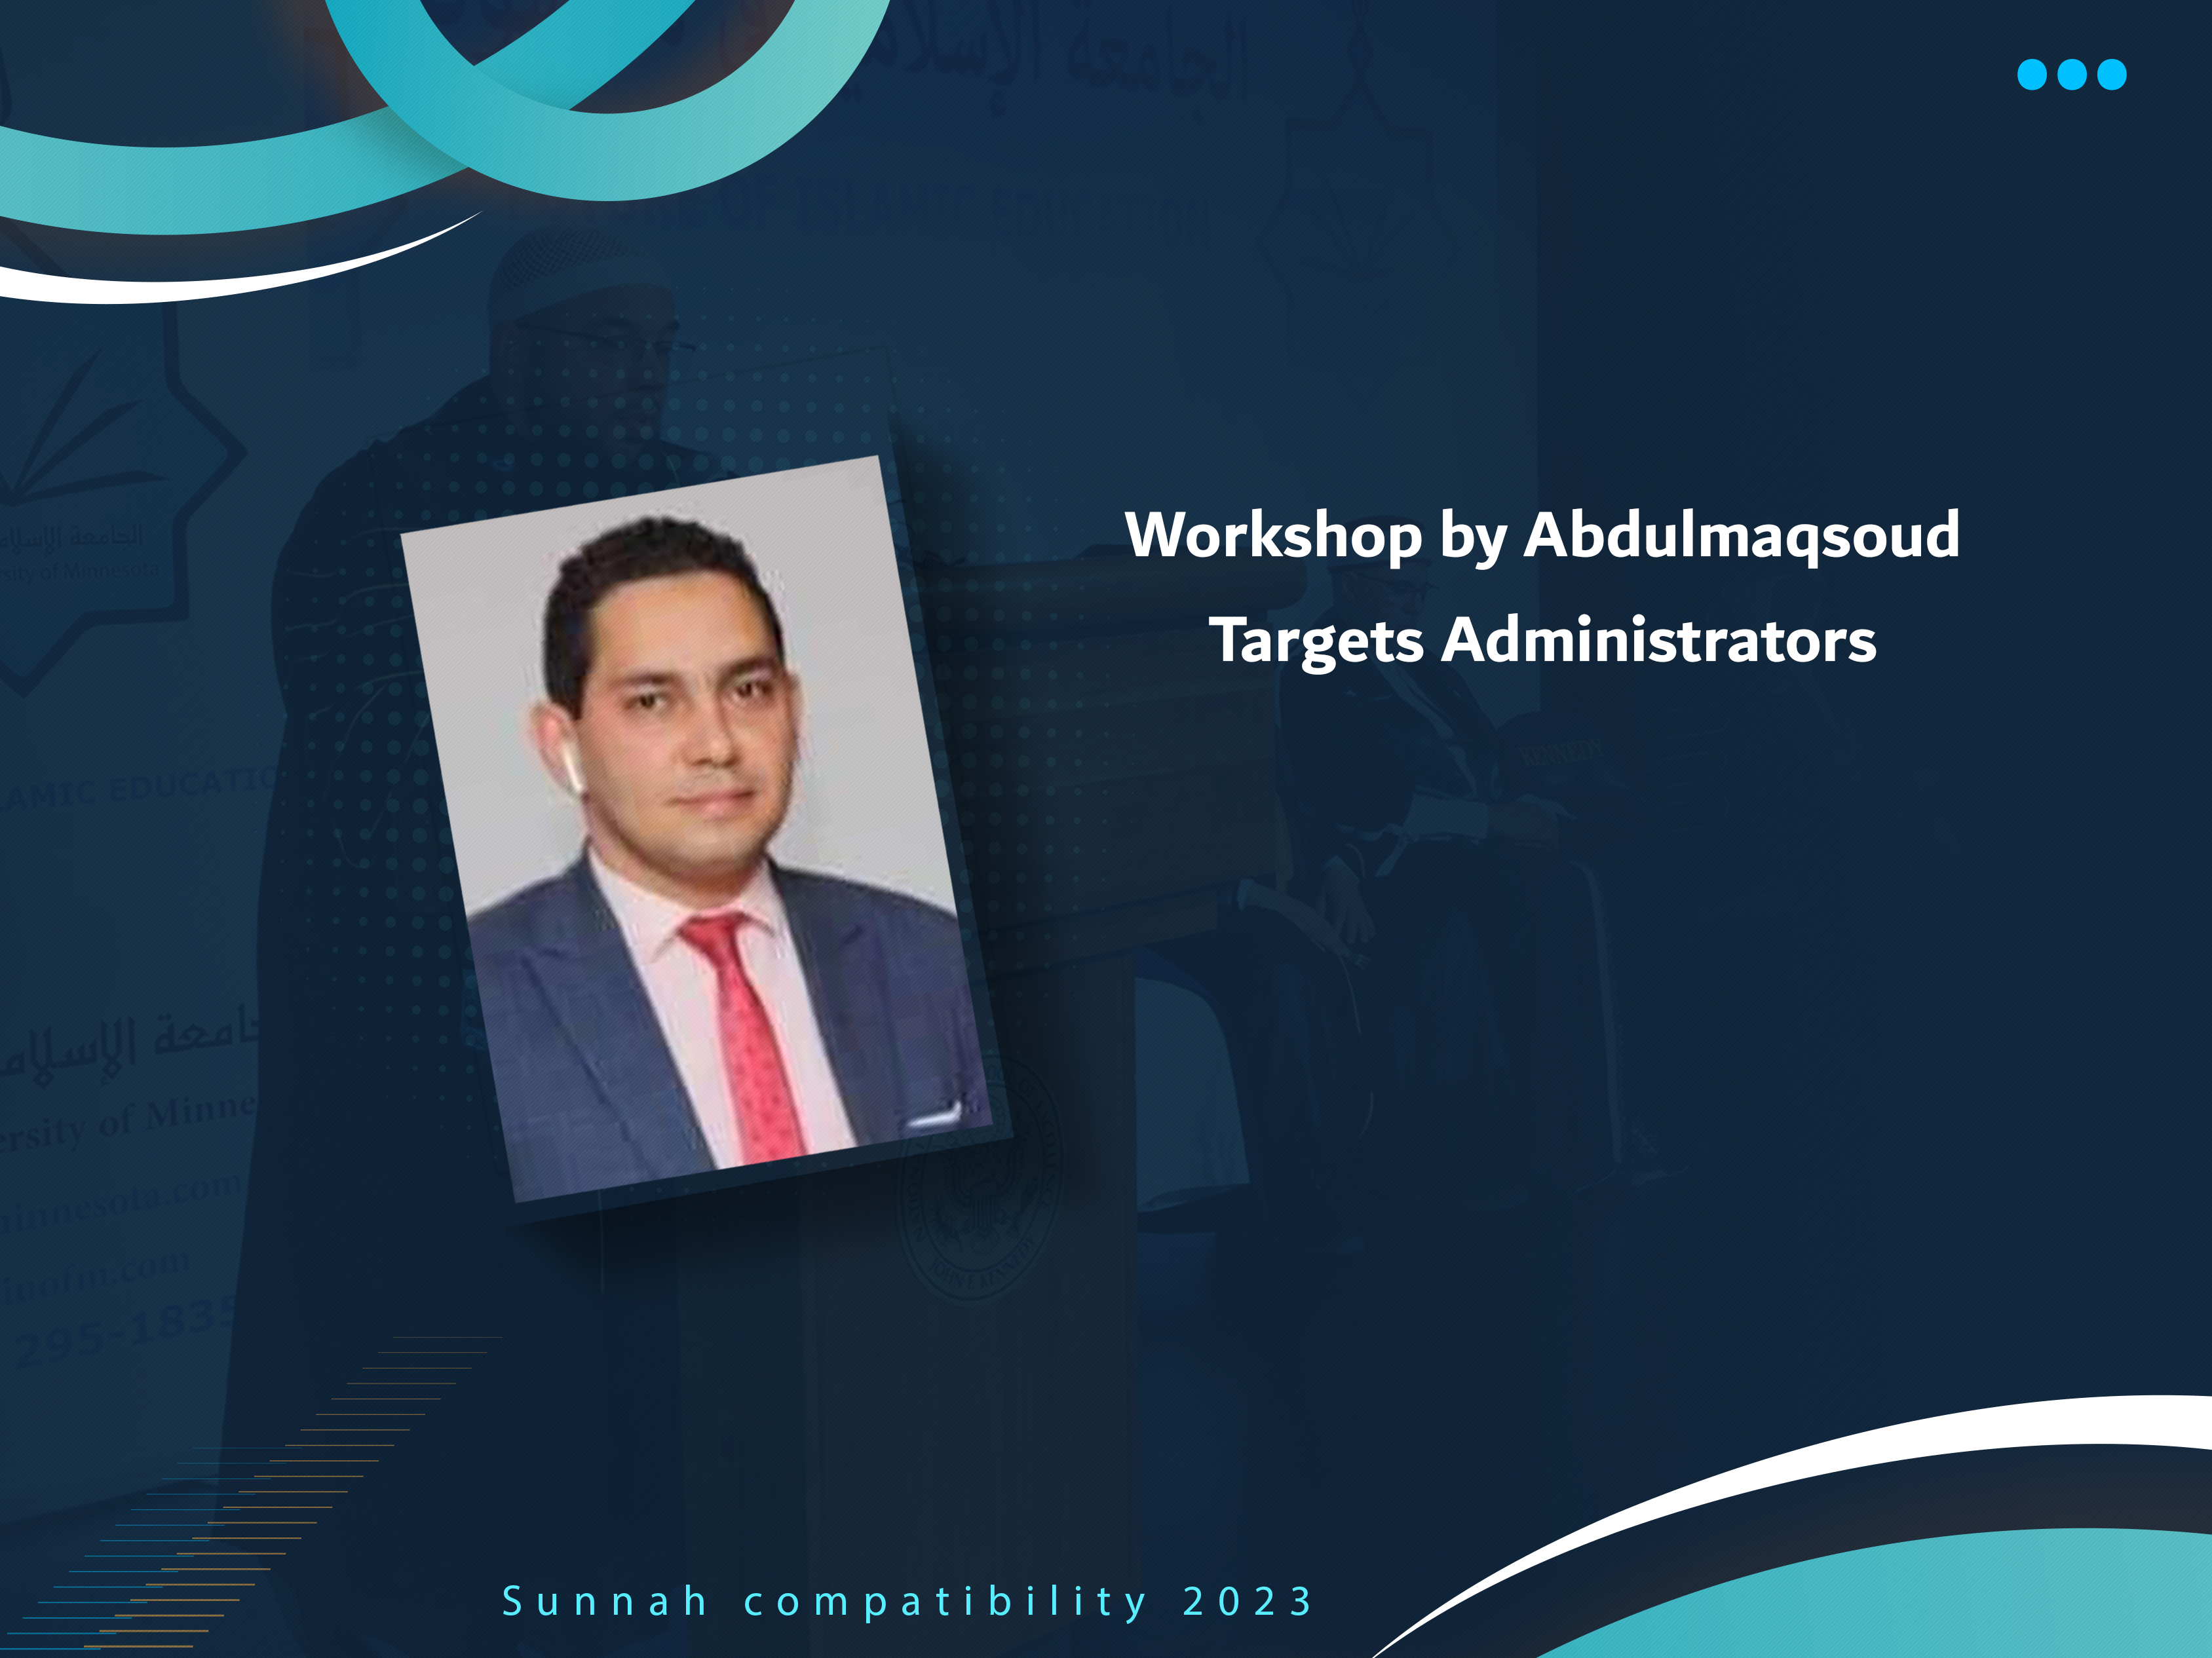 Workshop by Abdulmaqsoud Targets Administrators